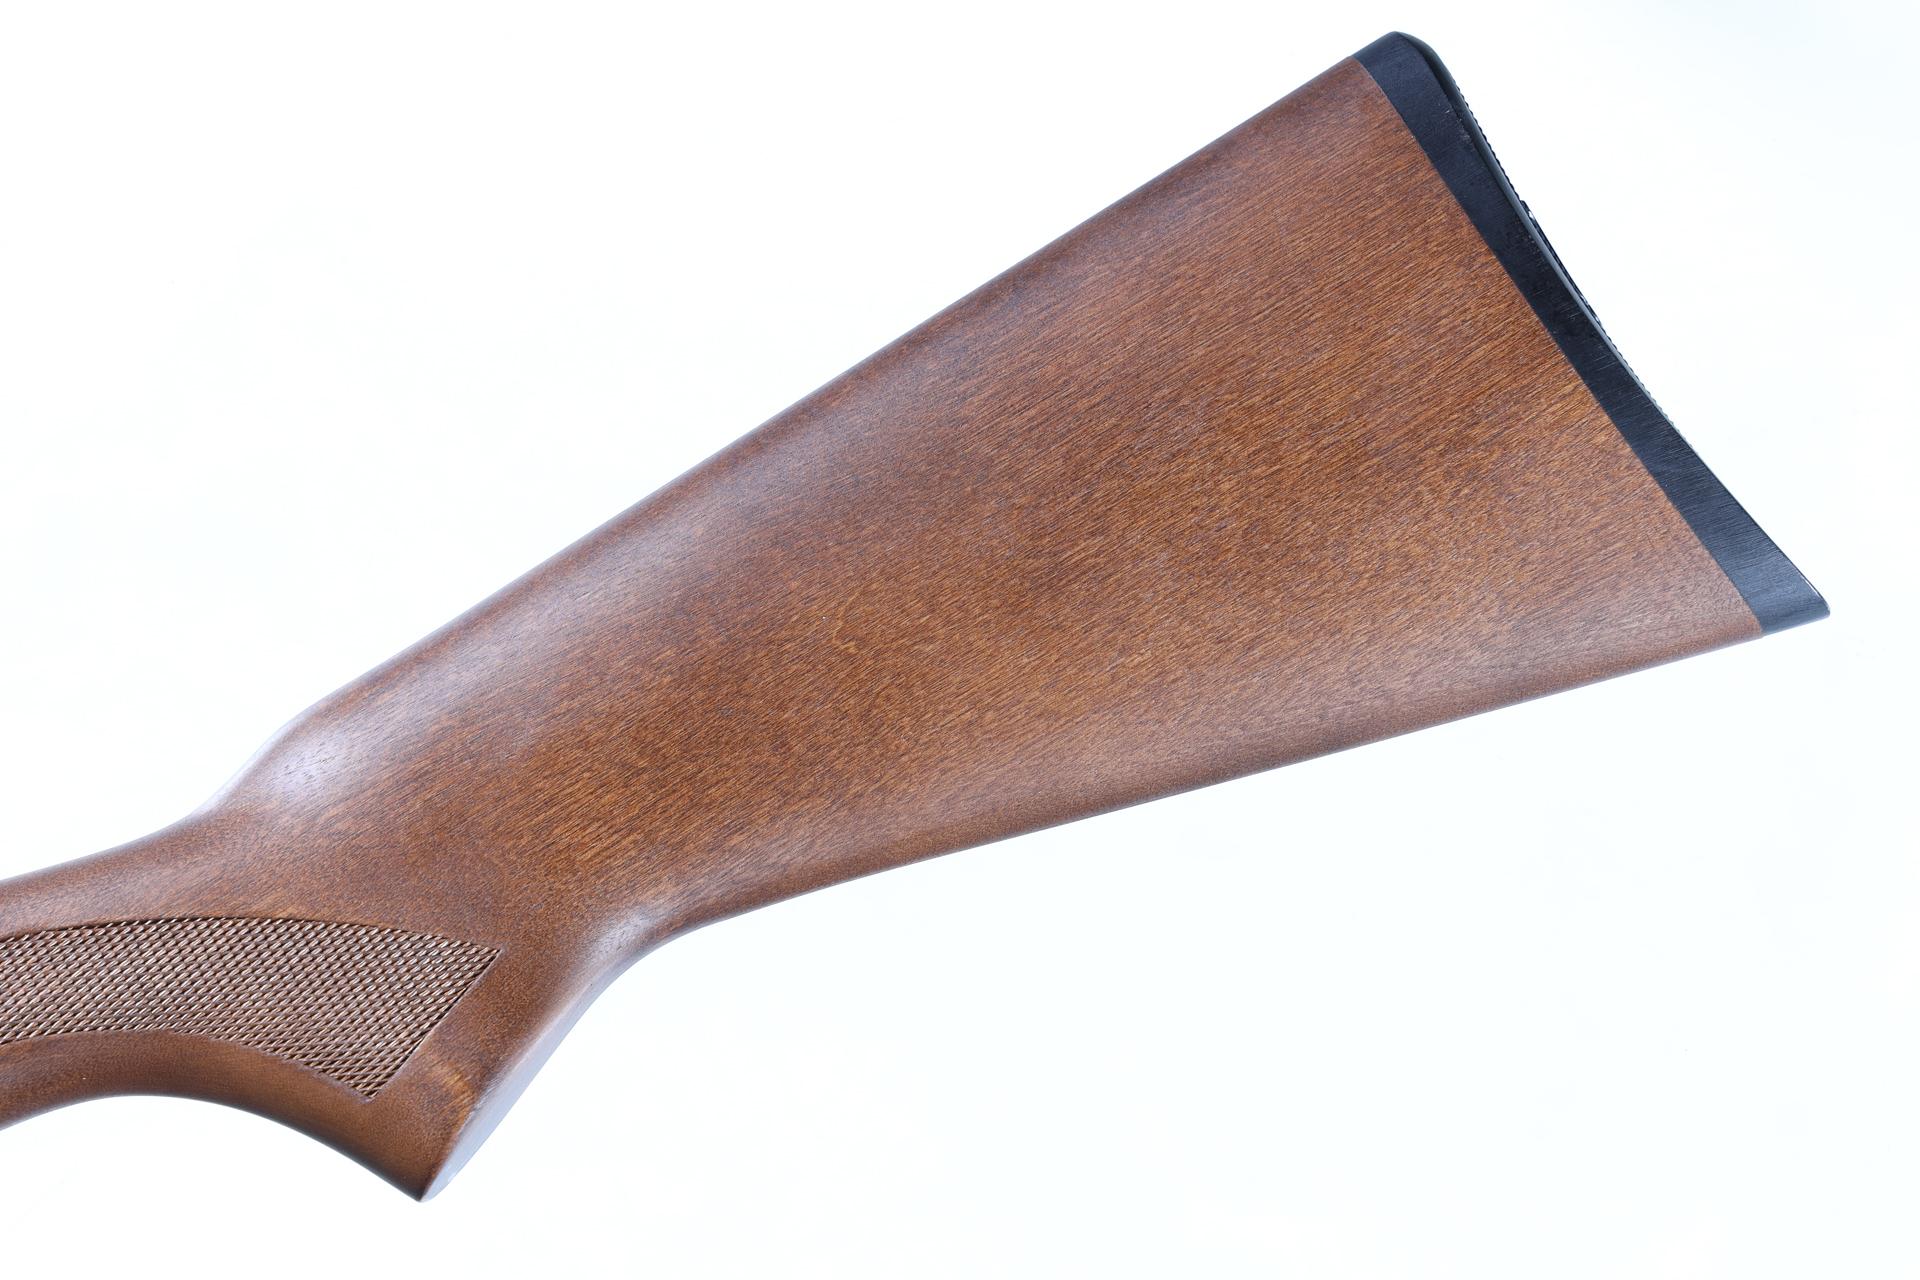 Remington 870 Express Slide Shotgun 28ga